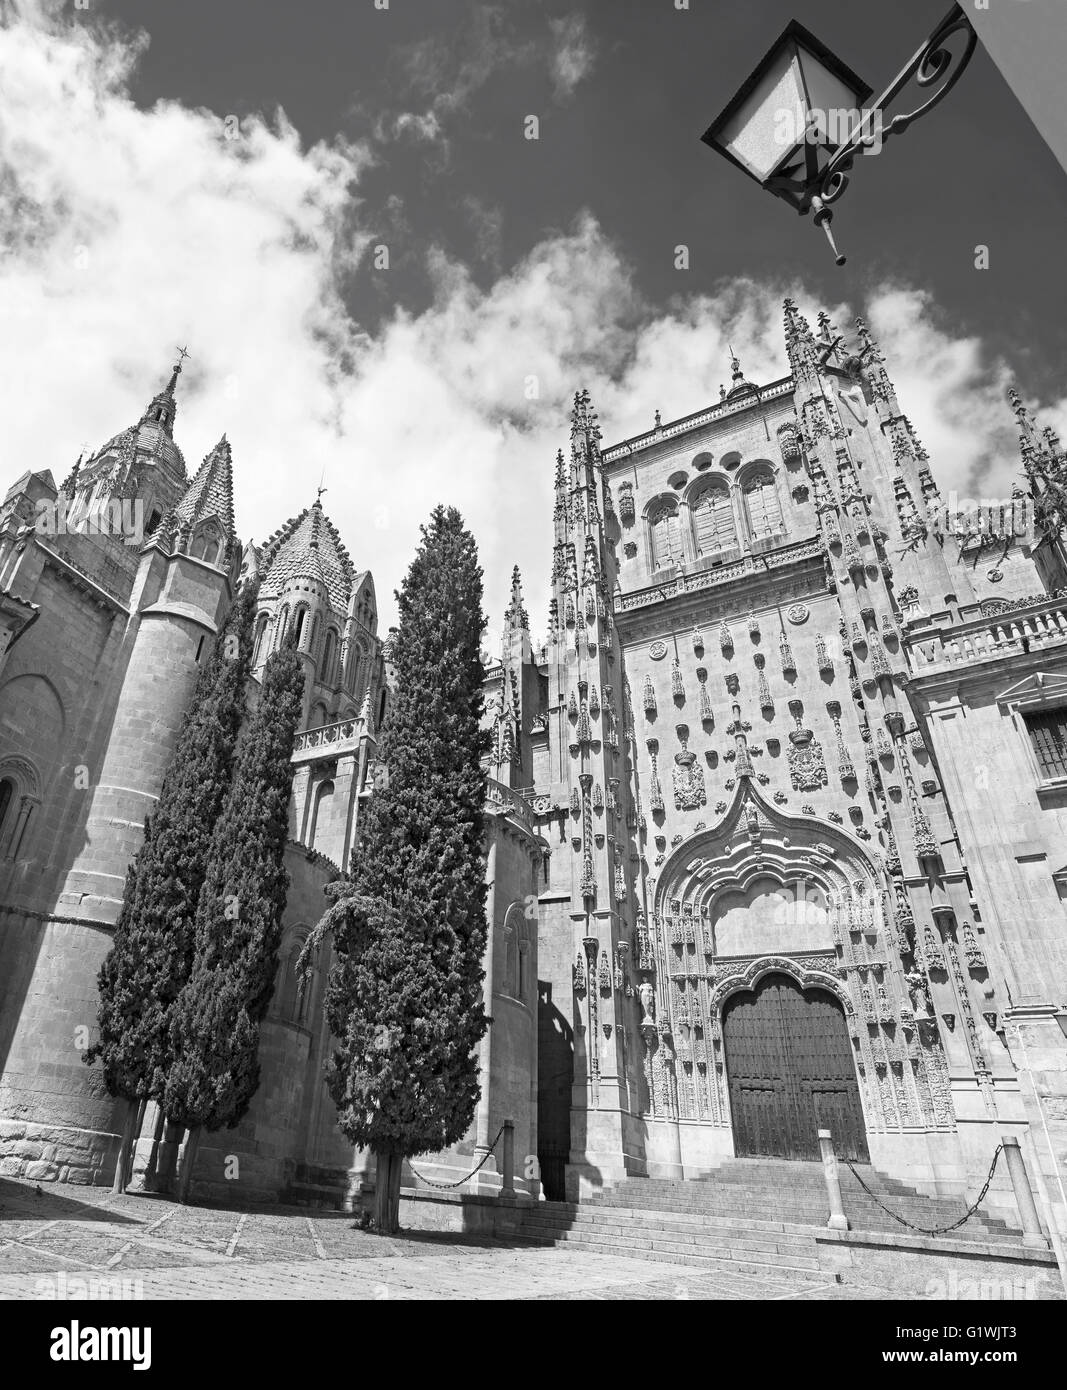 SALAMANCA, Spanien, APRIL - 17, 2016: Der Süden gotische Portal der Catedral Vieja - alte Kathedrale. Stockfoto